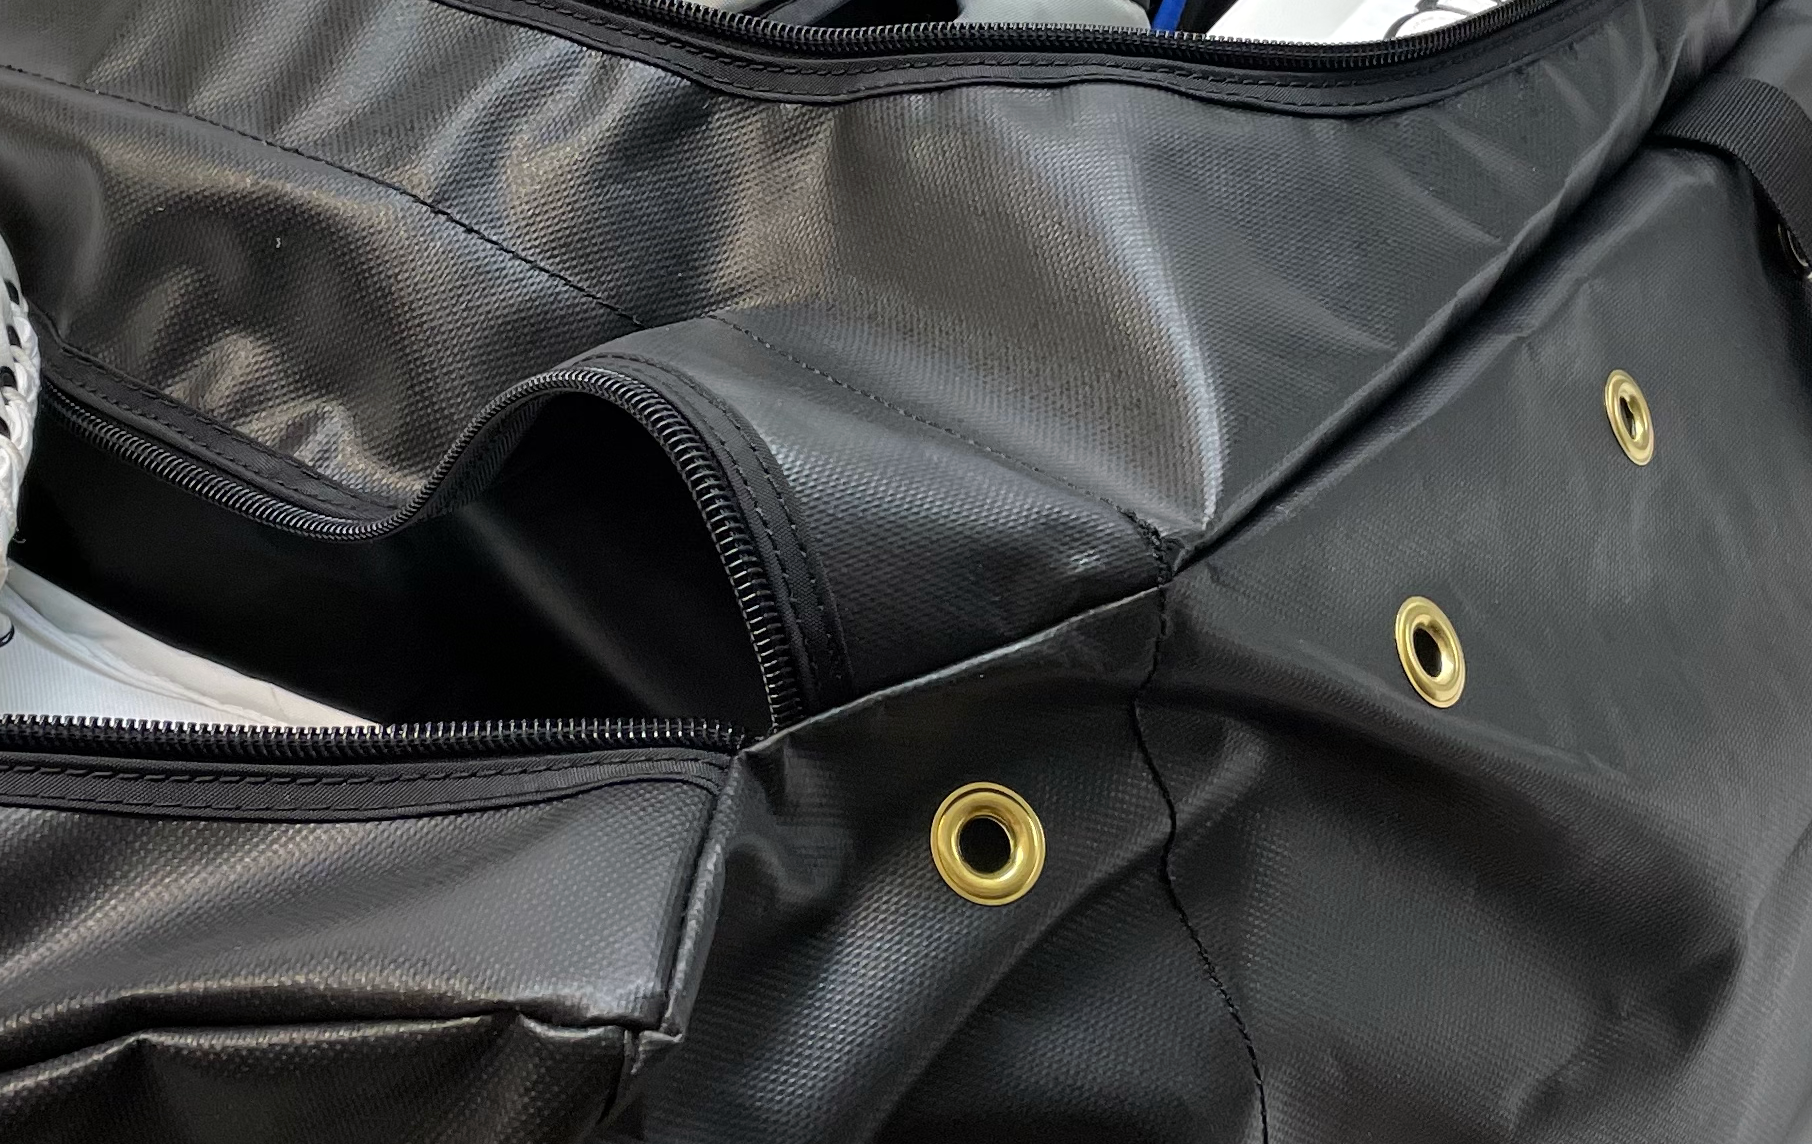 Close up of hockey bag open zipper pockets